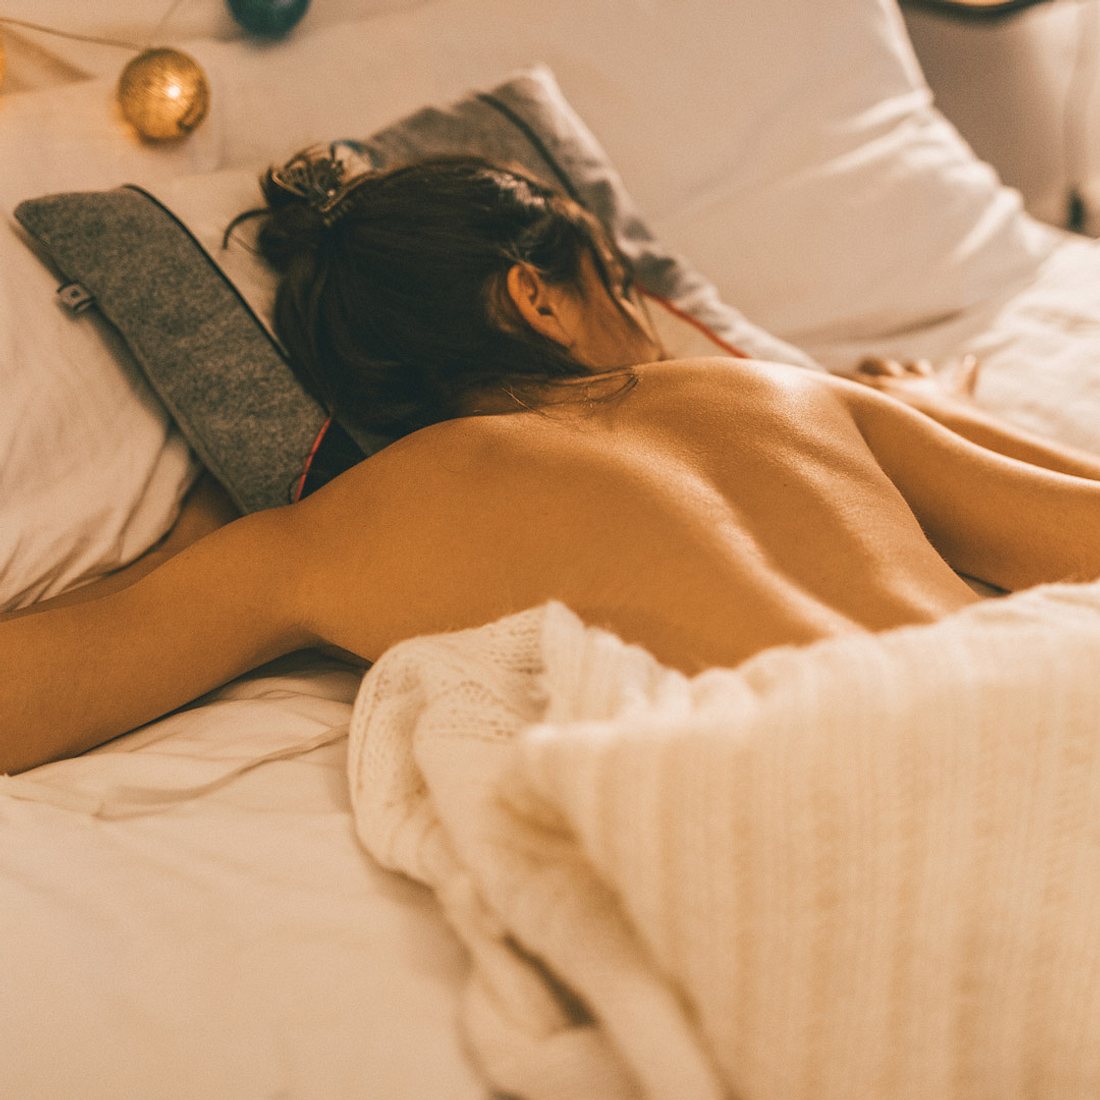 Gesund durch nackt schlafen: Ausprobieren lohnt sich!